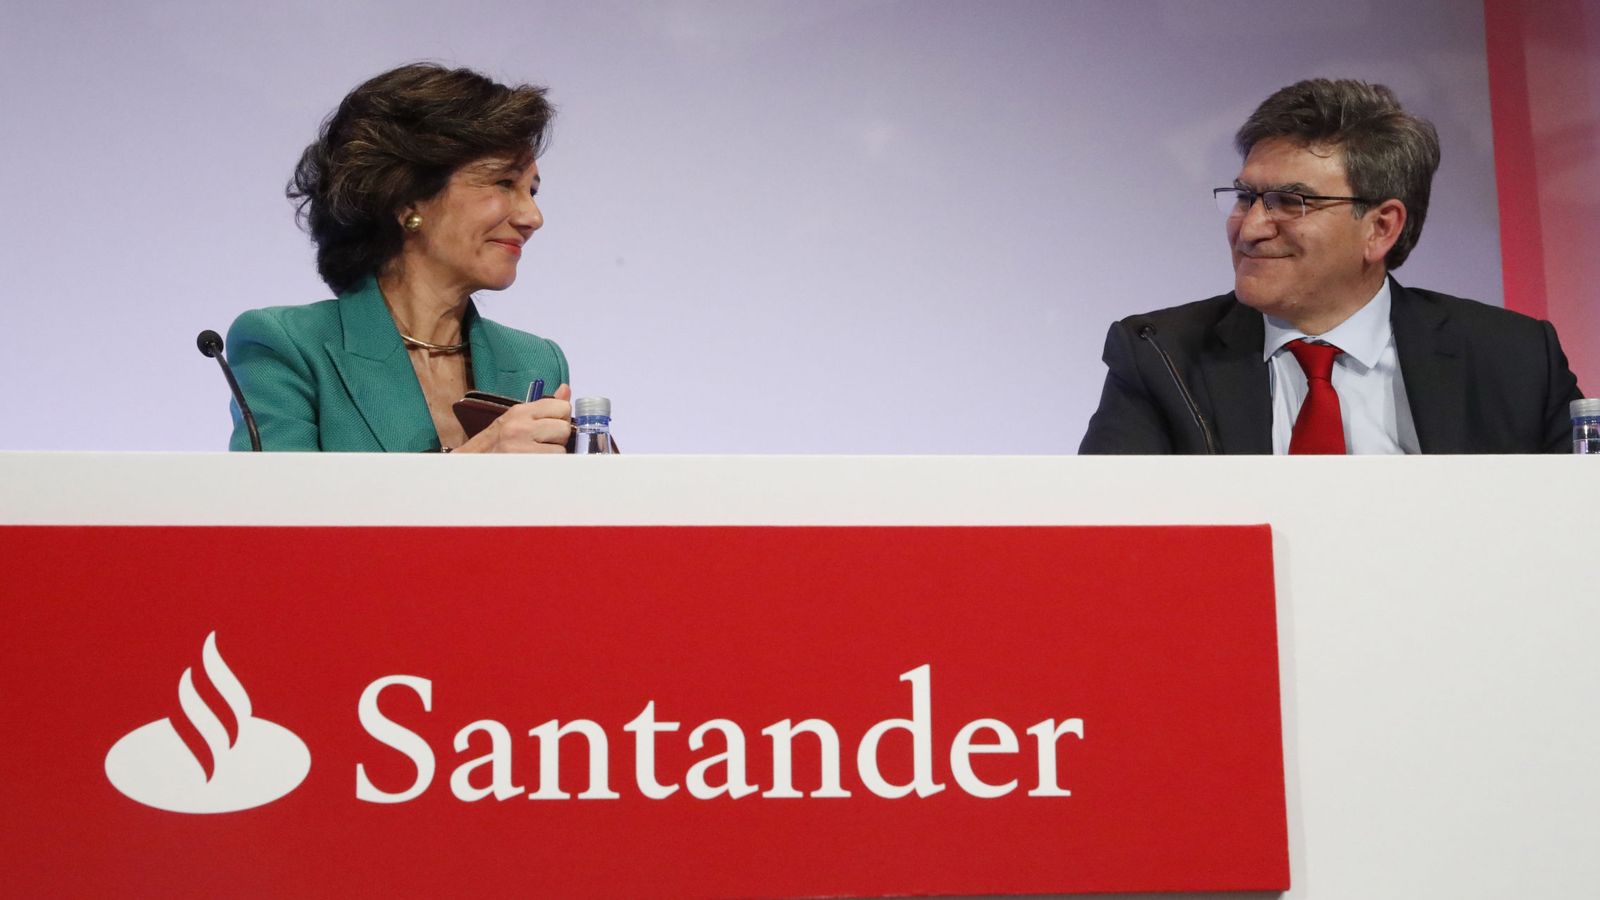 Foto: La presidenta del Santander, Ana Botín, y el consejero delegado, Jose Antonio Álvarez. (EFE)